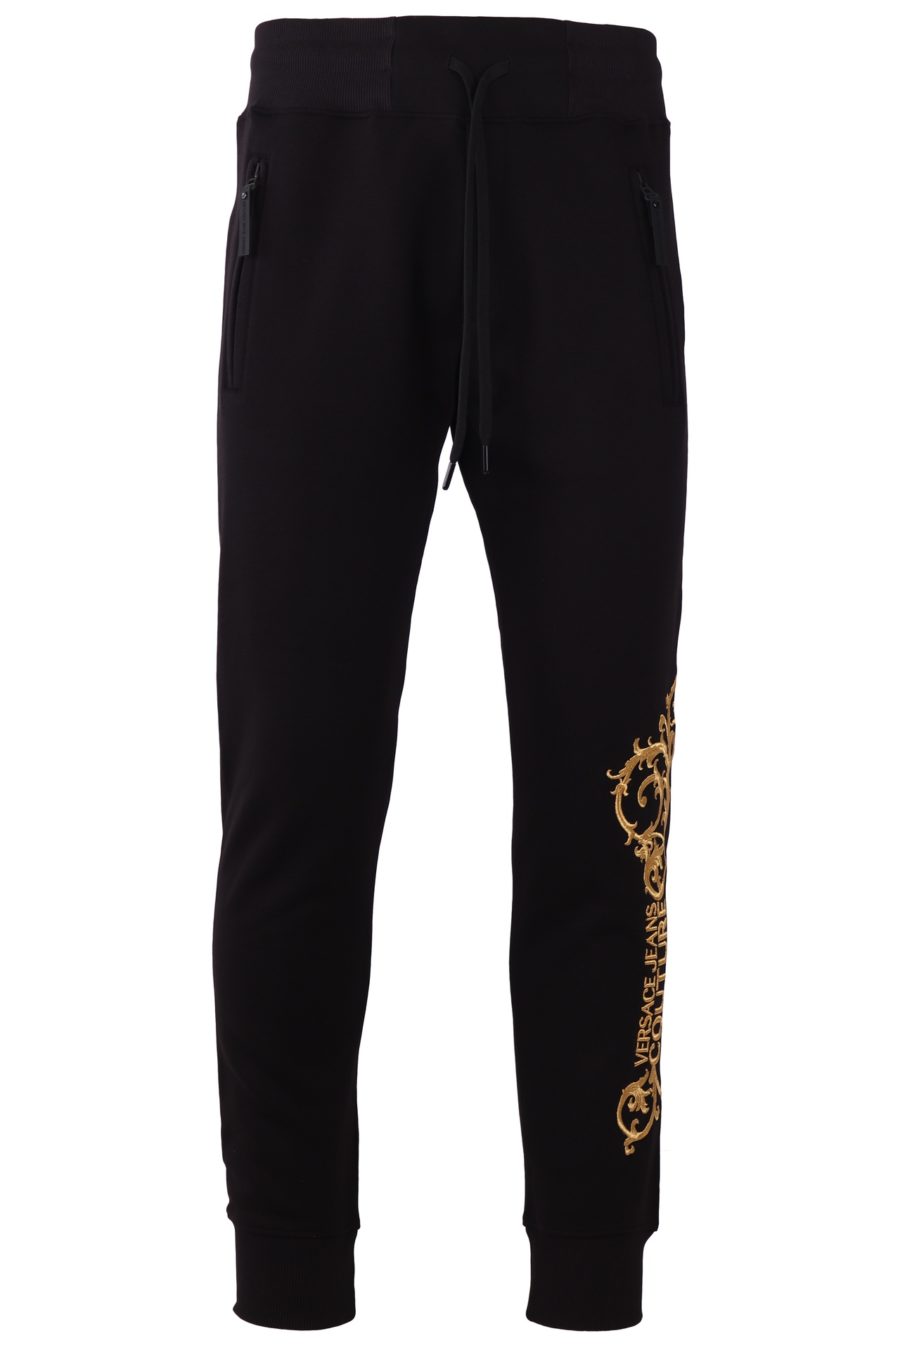 Pantalón de chándal Versace Jeans Couture de color negro con logo bordado - a4f839fe744969423000ac1aebd5022d83b8b951